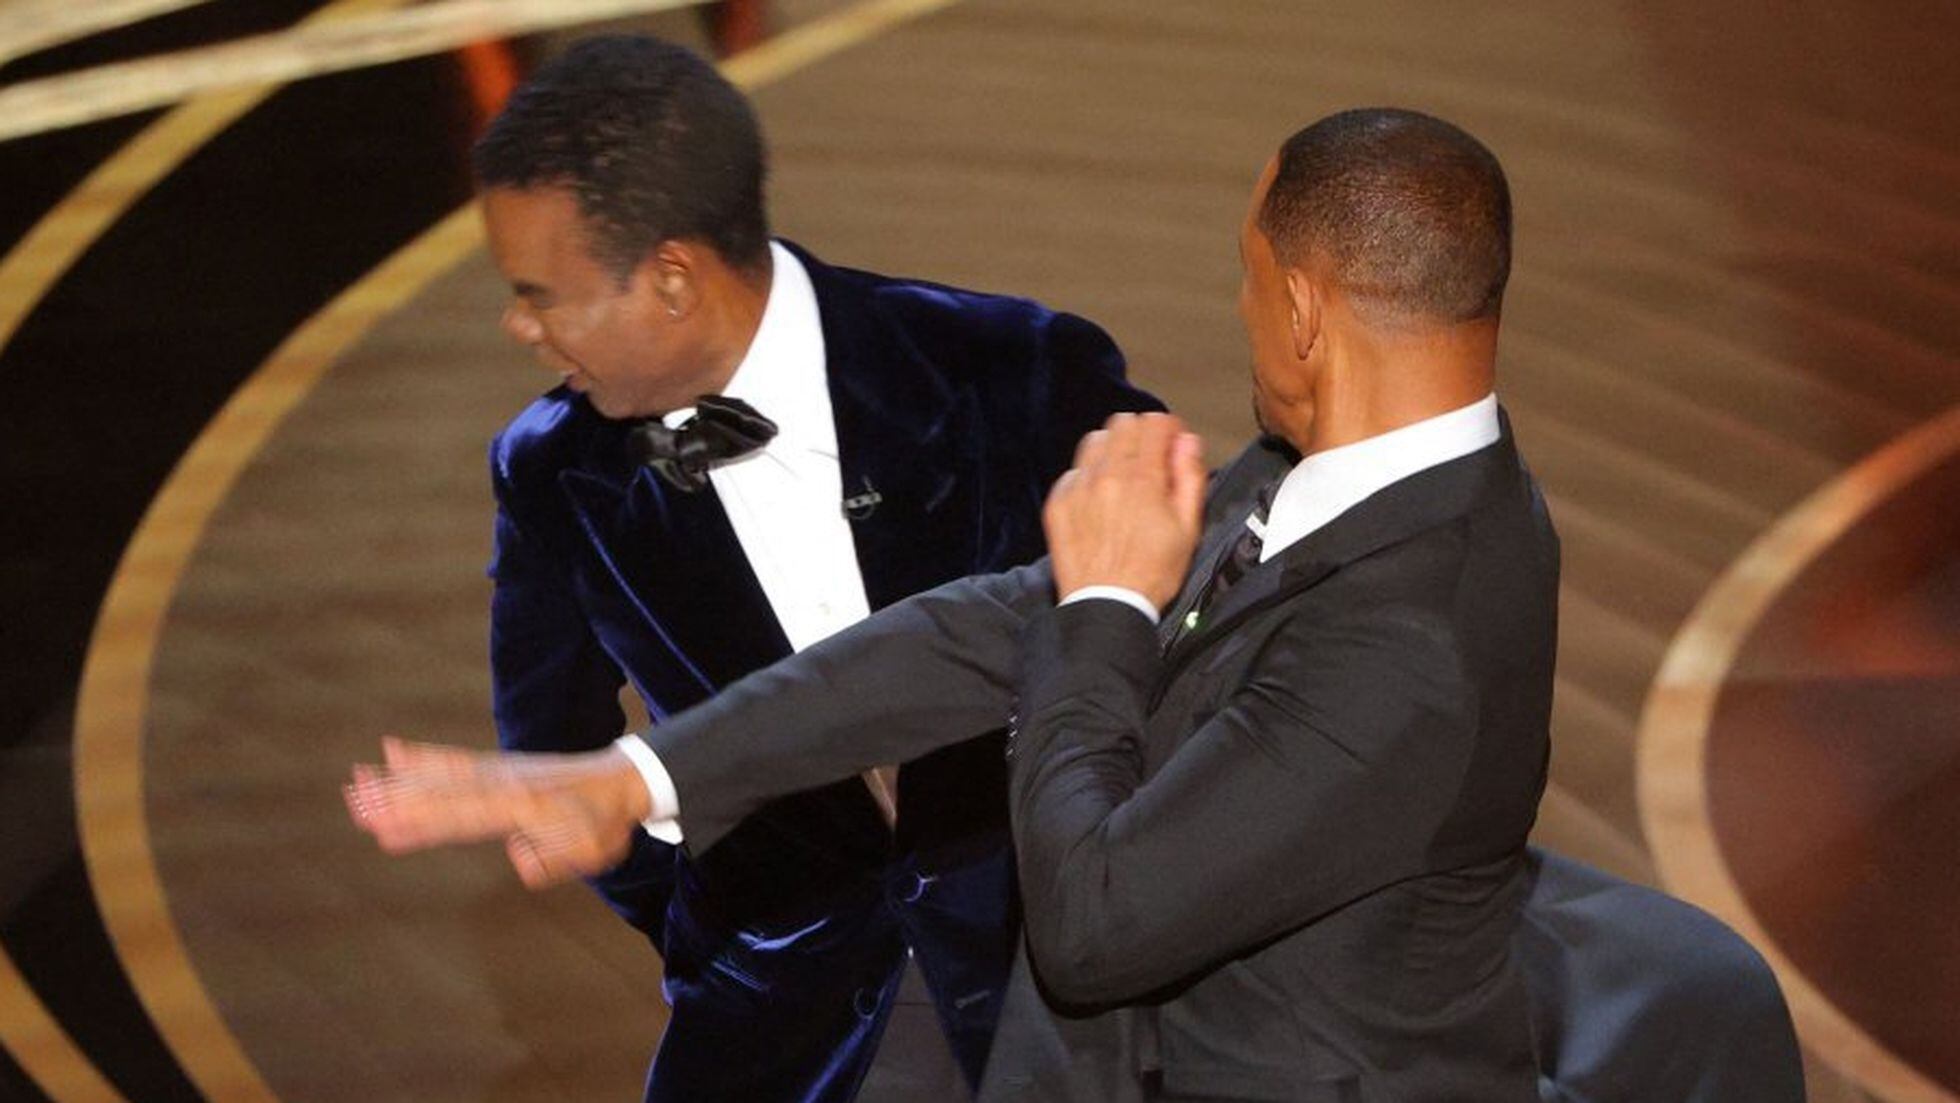 La bofetada de Will Smith a Chris Rock en los Oscar: las reacciones y la  secuencia completa del momento | Premios Oscar 2022 | EL PAÍS